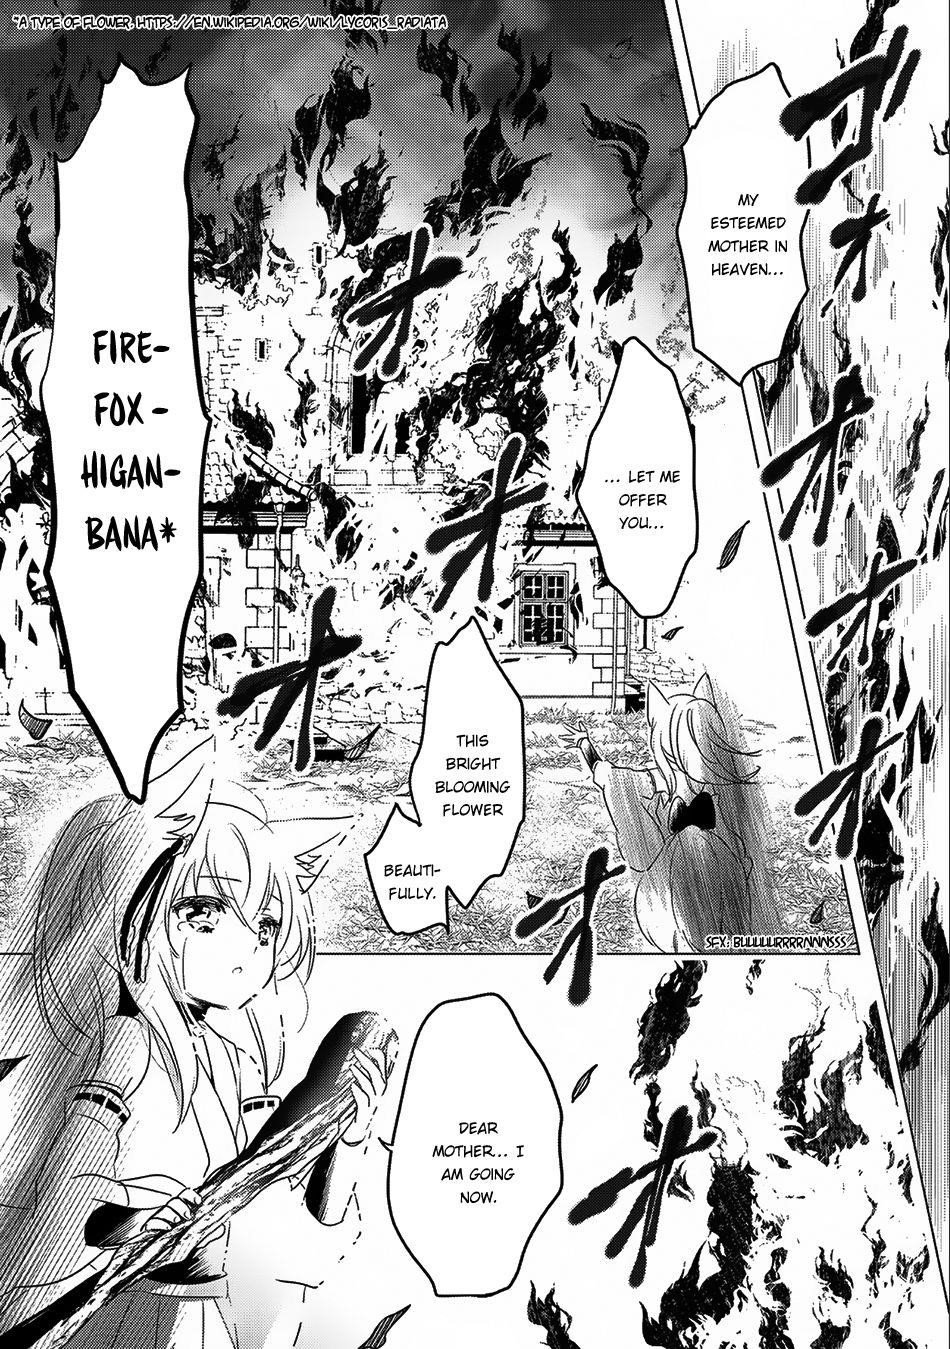 Goblin Slayer Manga Chapter 41, Goblin Slayer Wiki